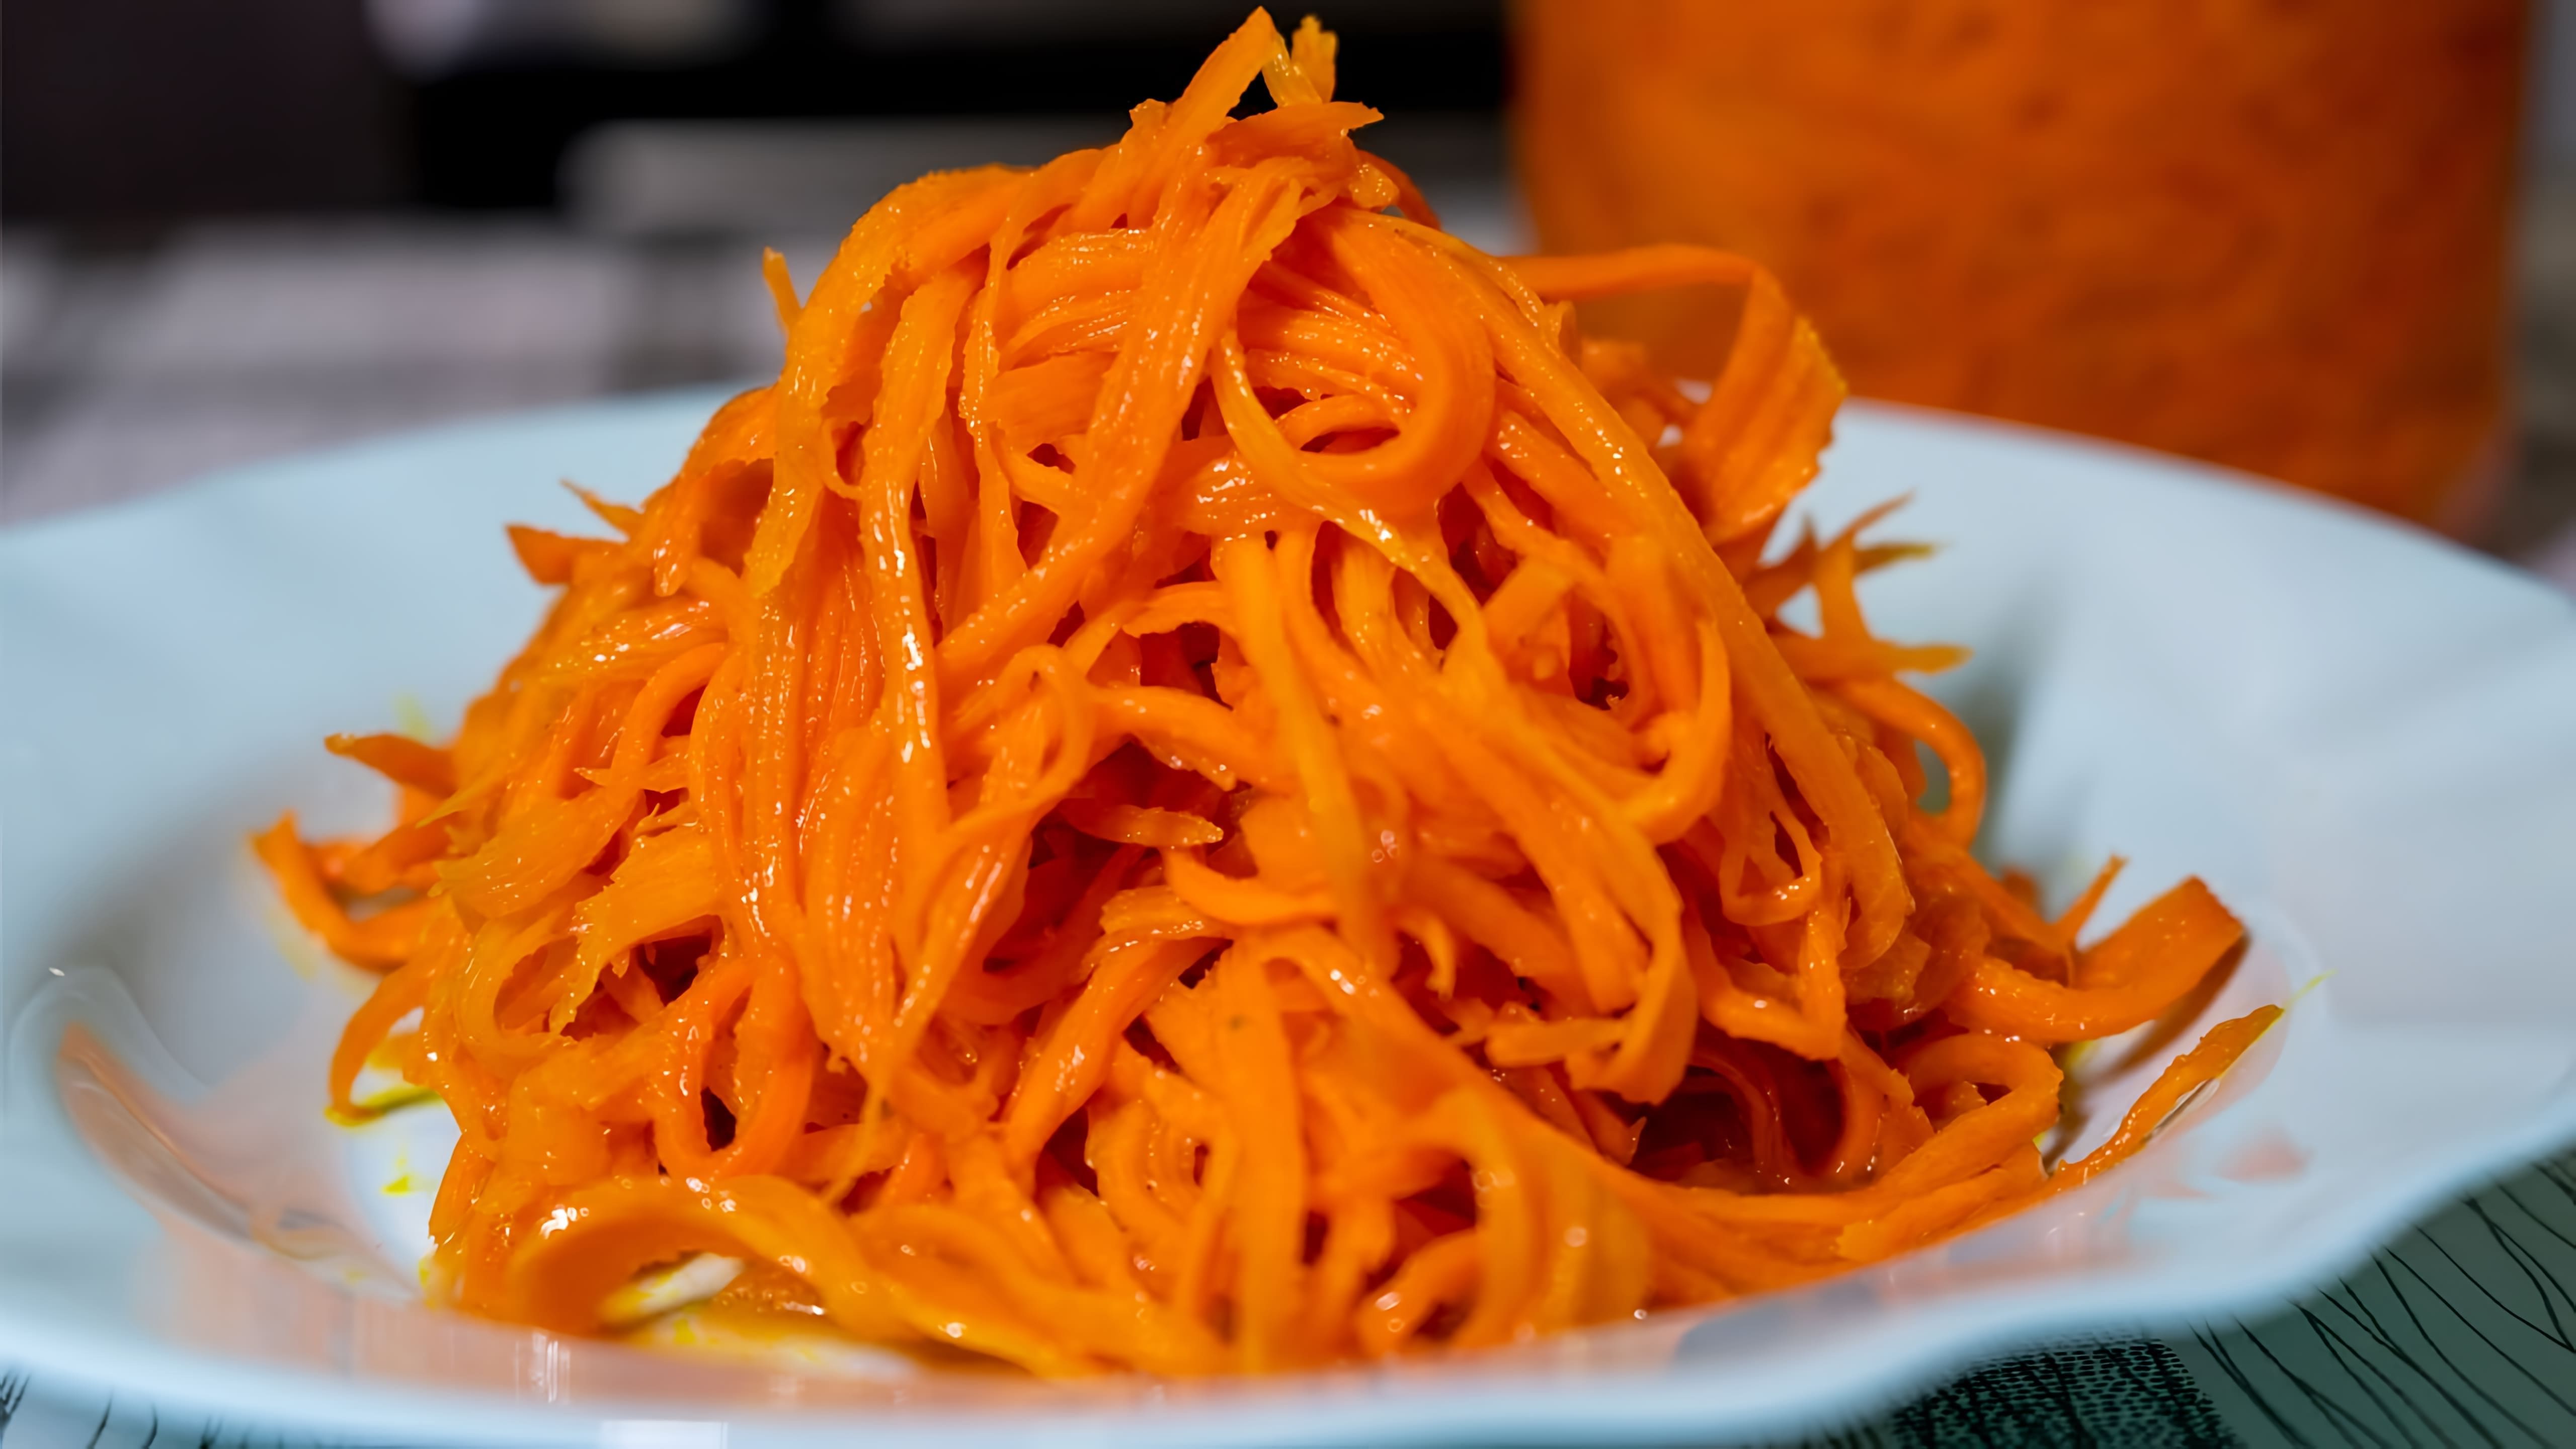 В этом видео демонстрируется процесс приготовления салата из моркови, который напоминает морковь по-корейски